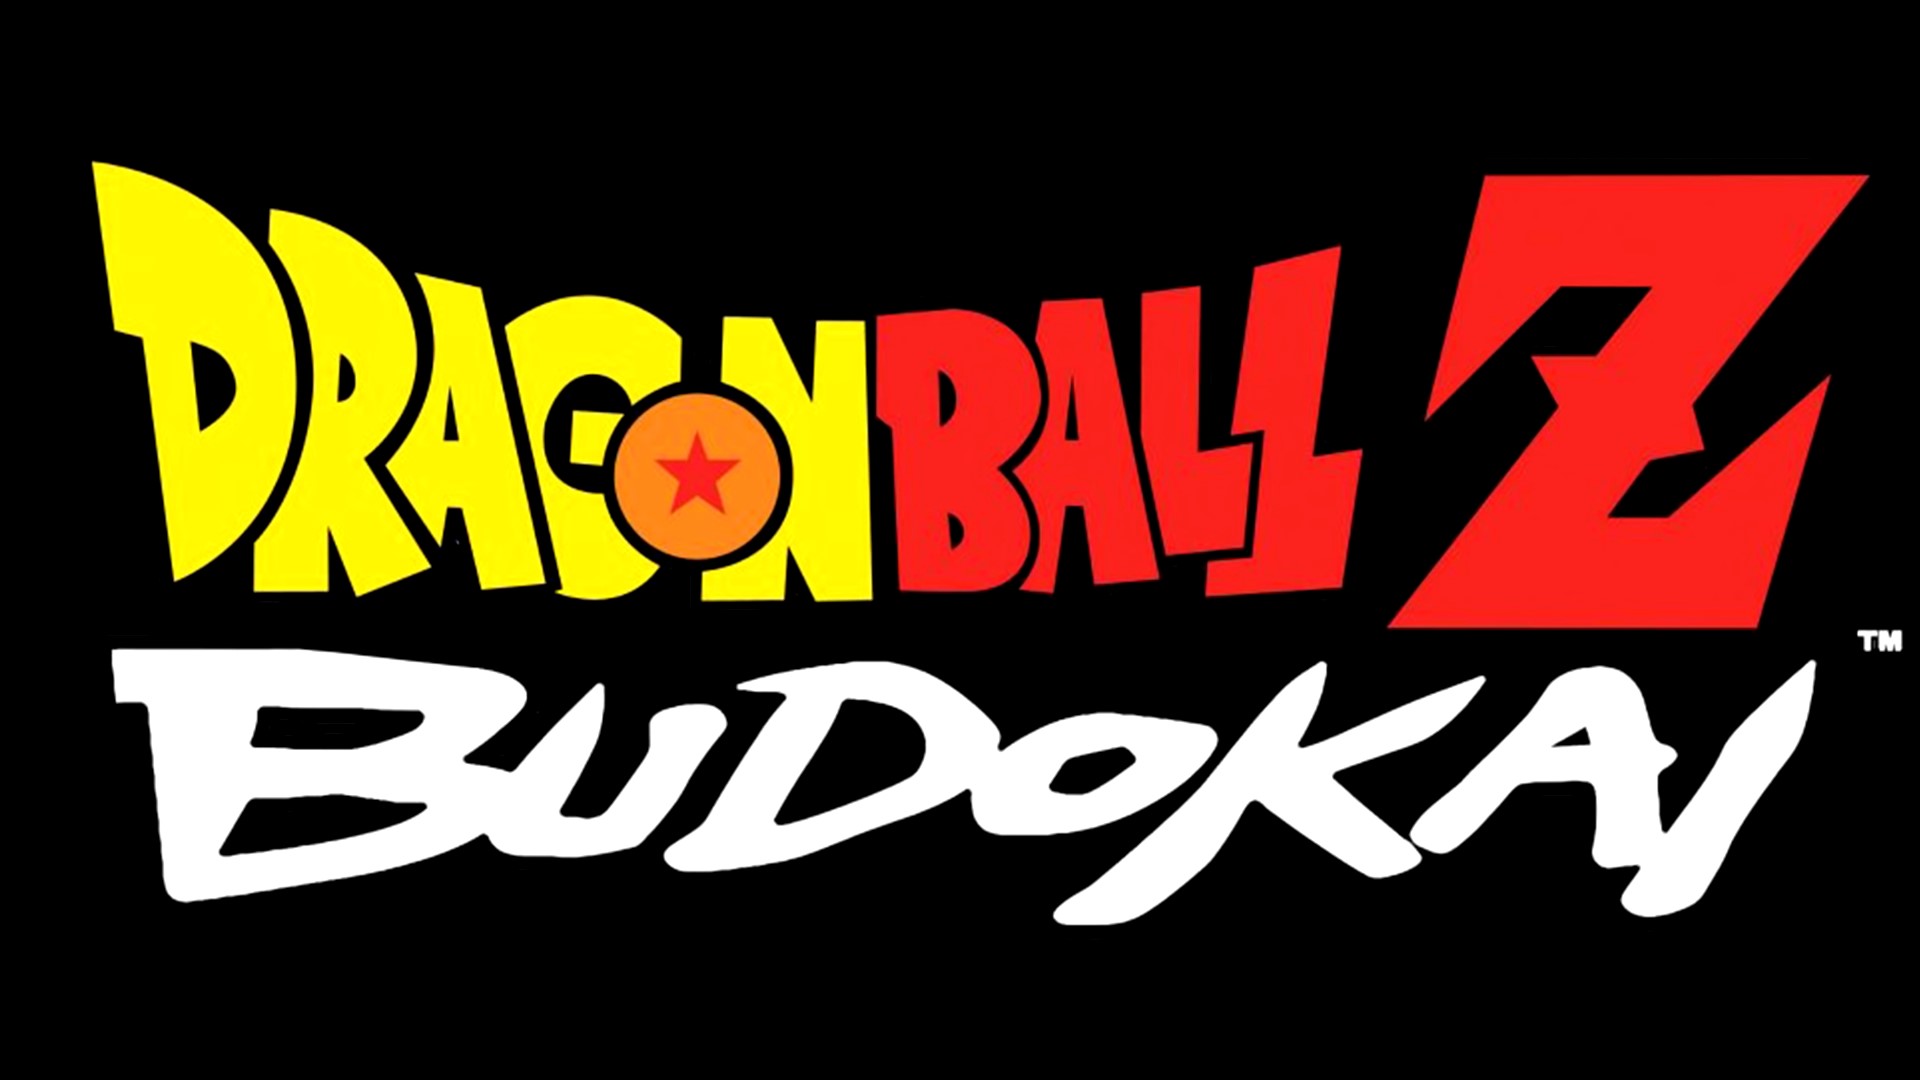 Dragon Ball Z: Budokai 3 - VGMdb